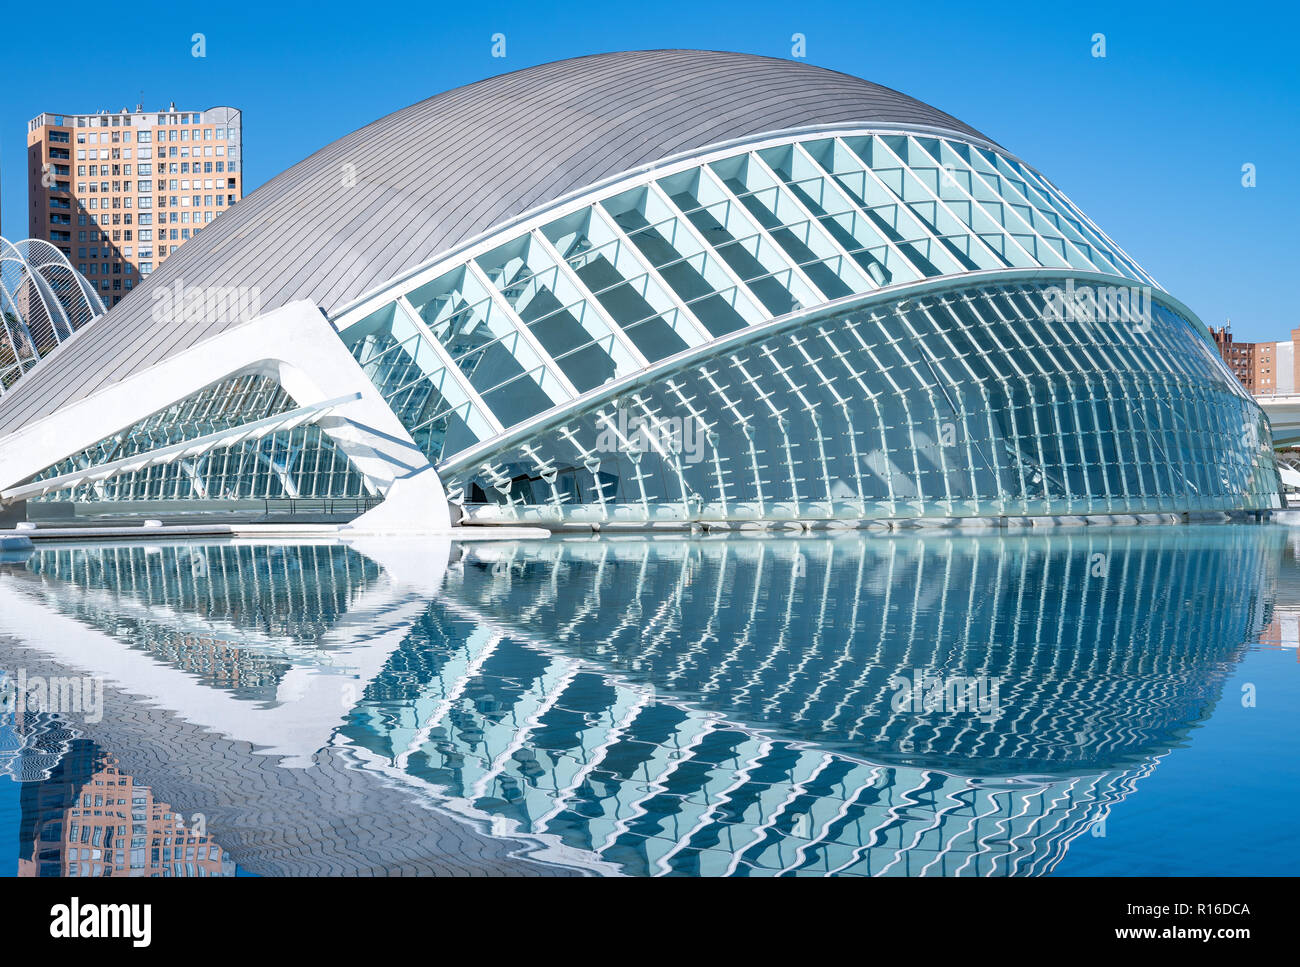 Valencia, Spagna - Octuber 15, 2016: la Città delle Arti e delle scienze dell'architetto Calatrava. L'emisfero, installazione per il cinema digitale projectio Foto Stock